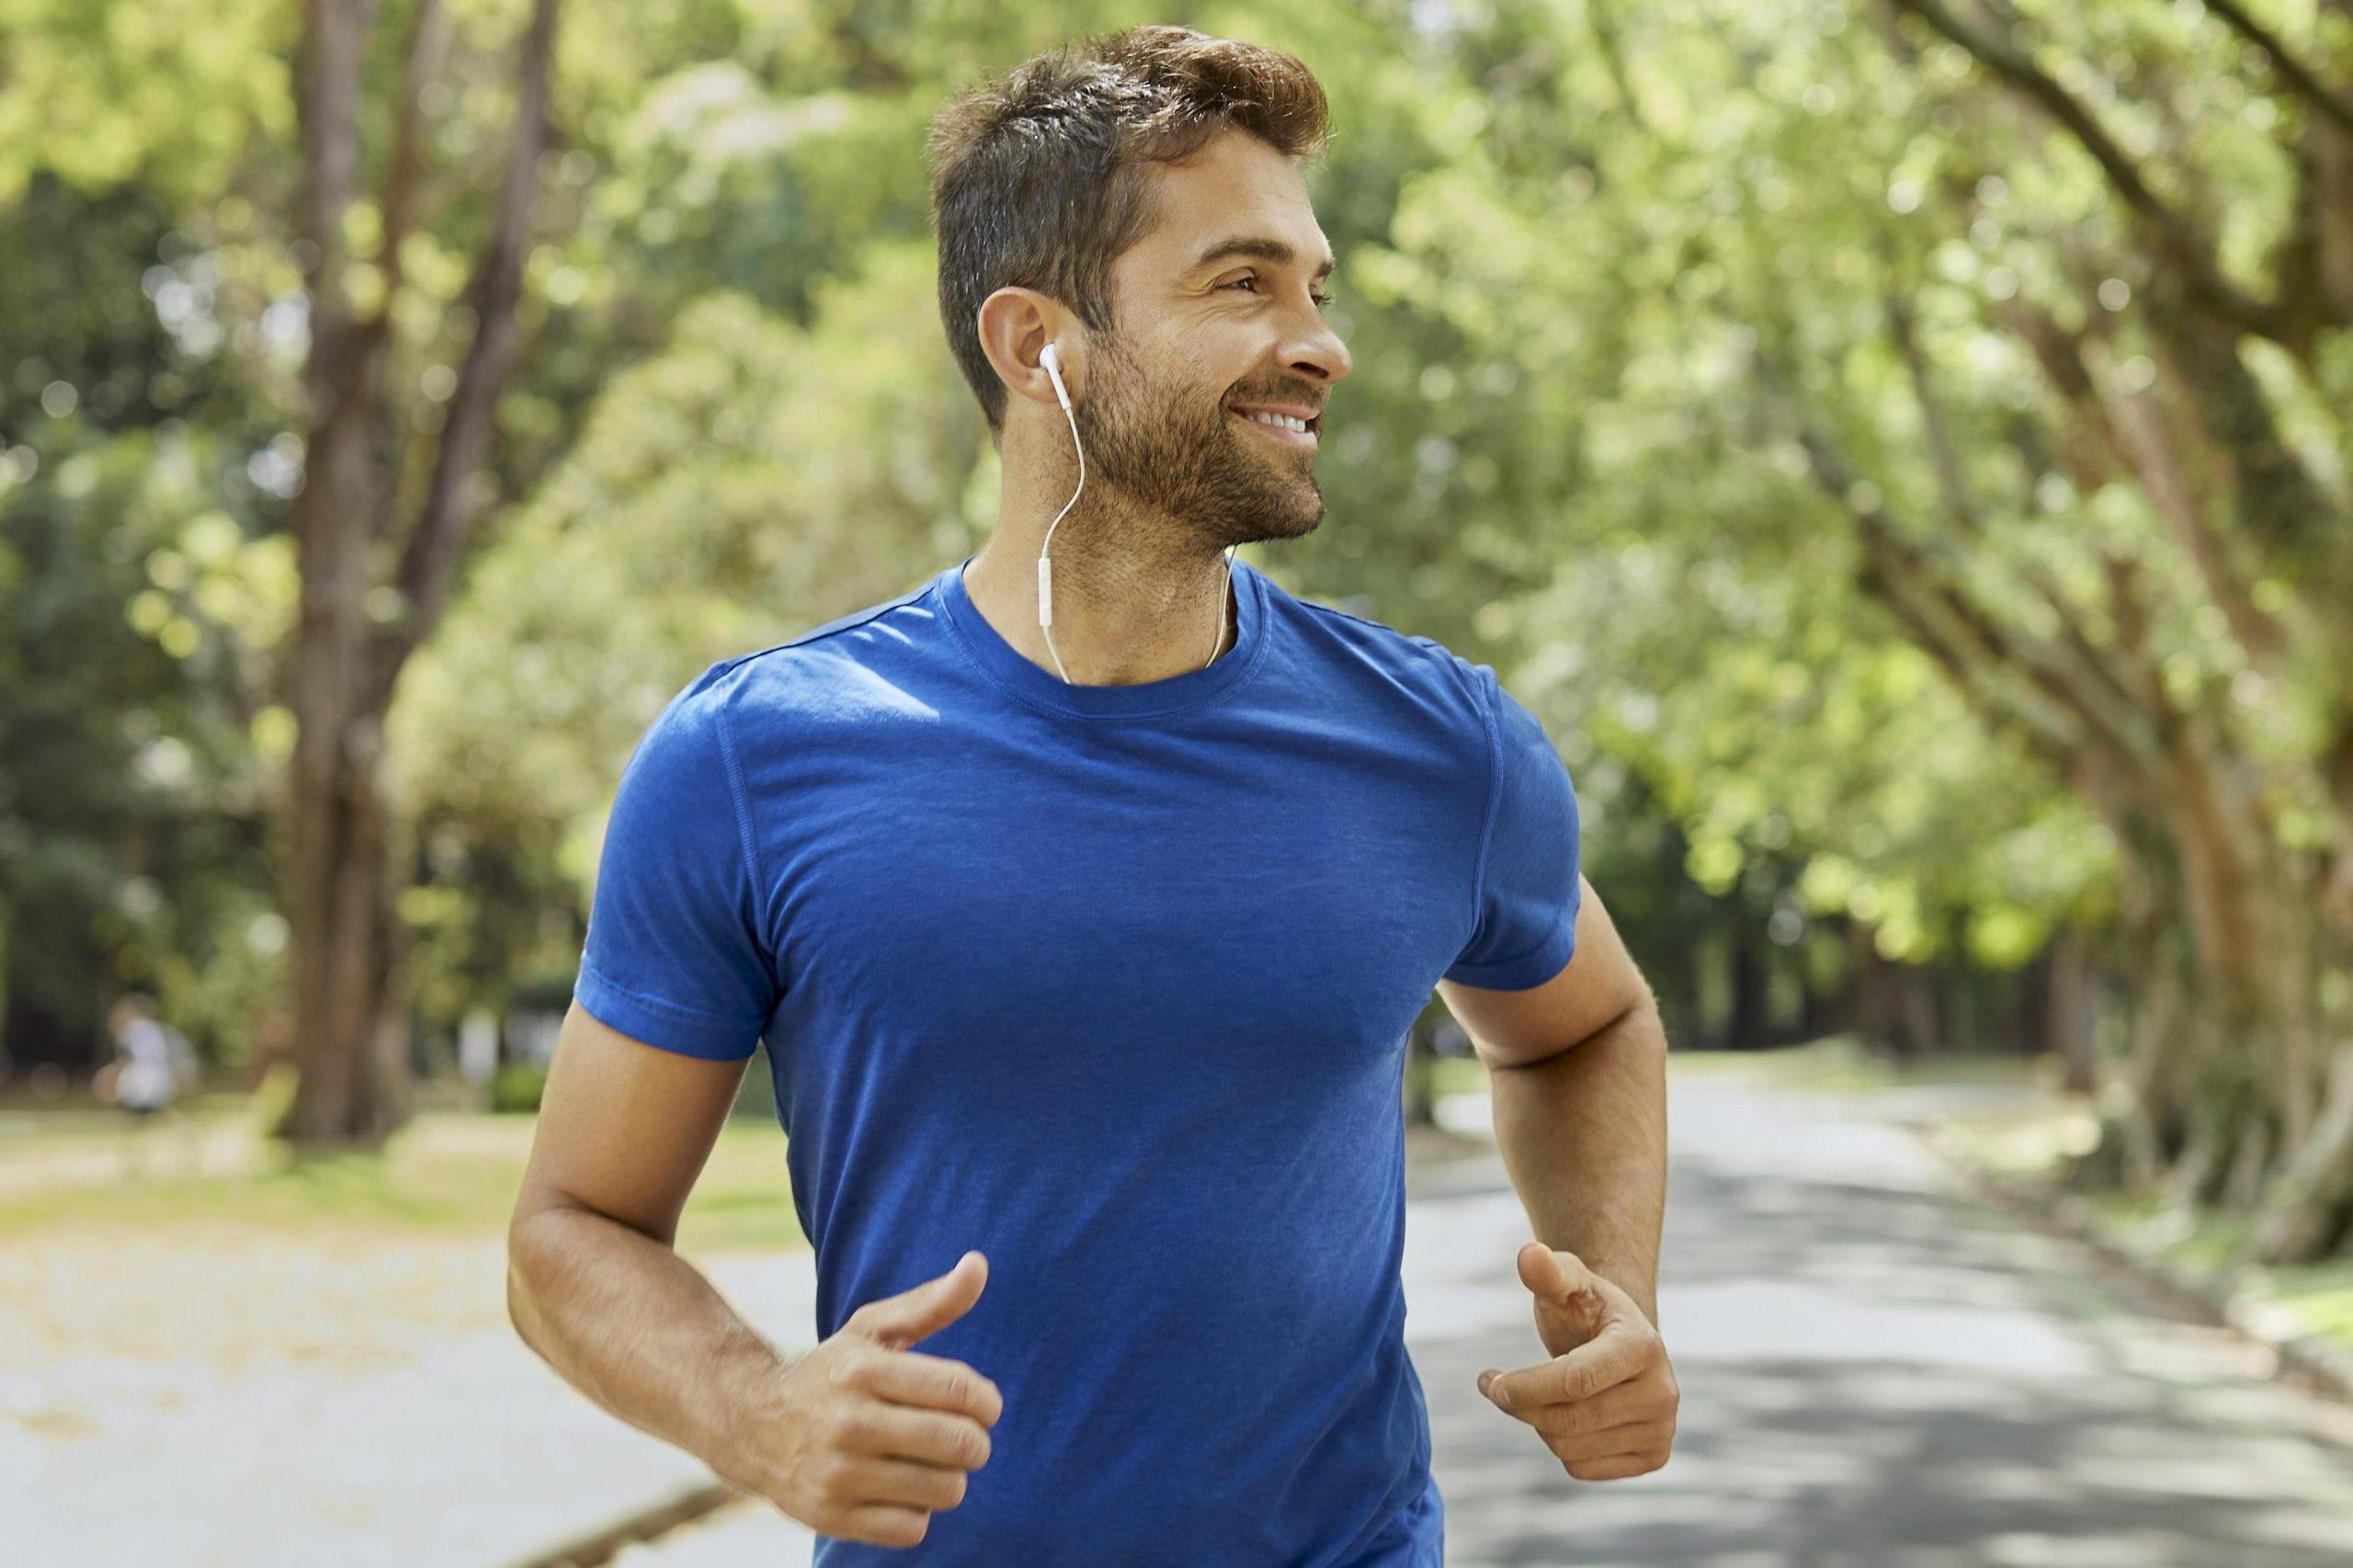 مردی خندان با تی شرت آبی در یک پارک در حال دویدن است.